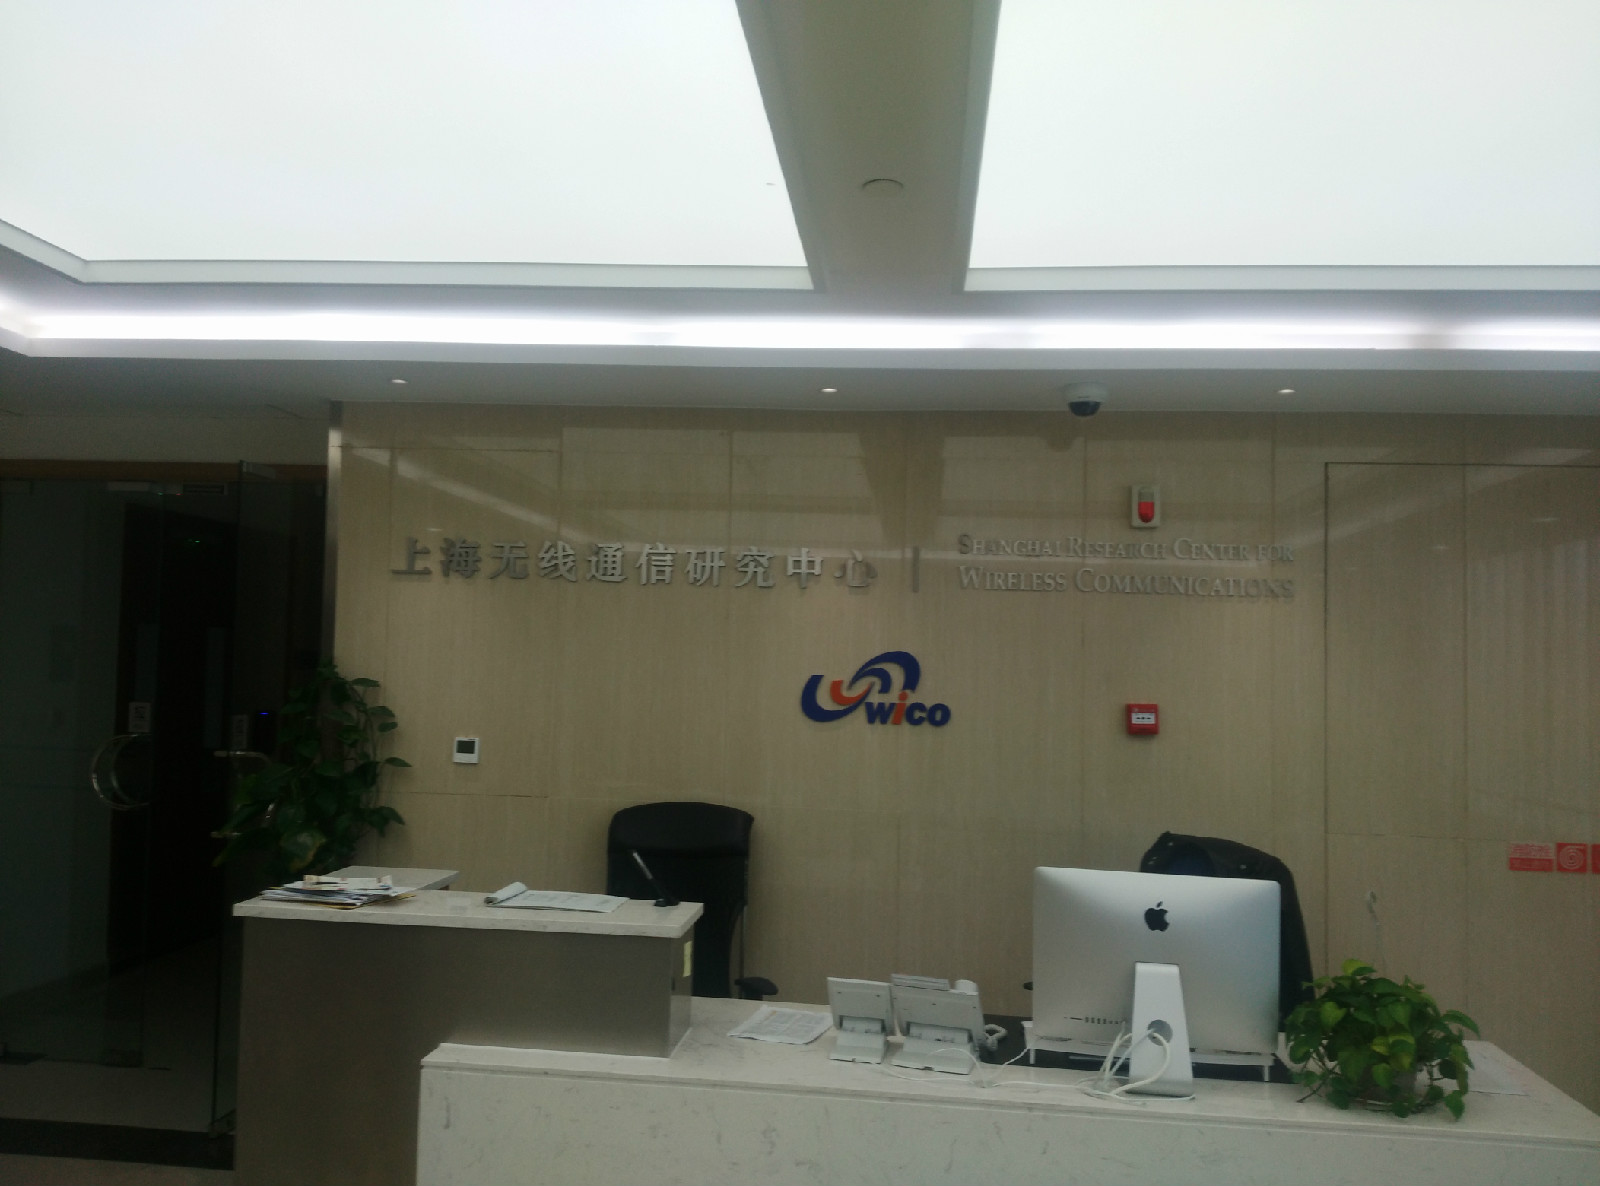 上海無線通信研究中心